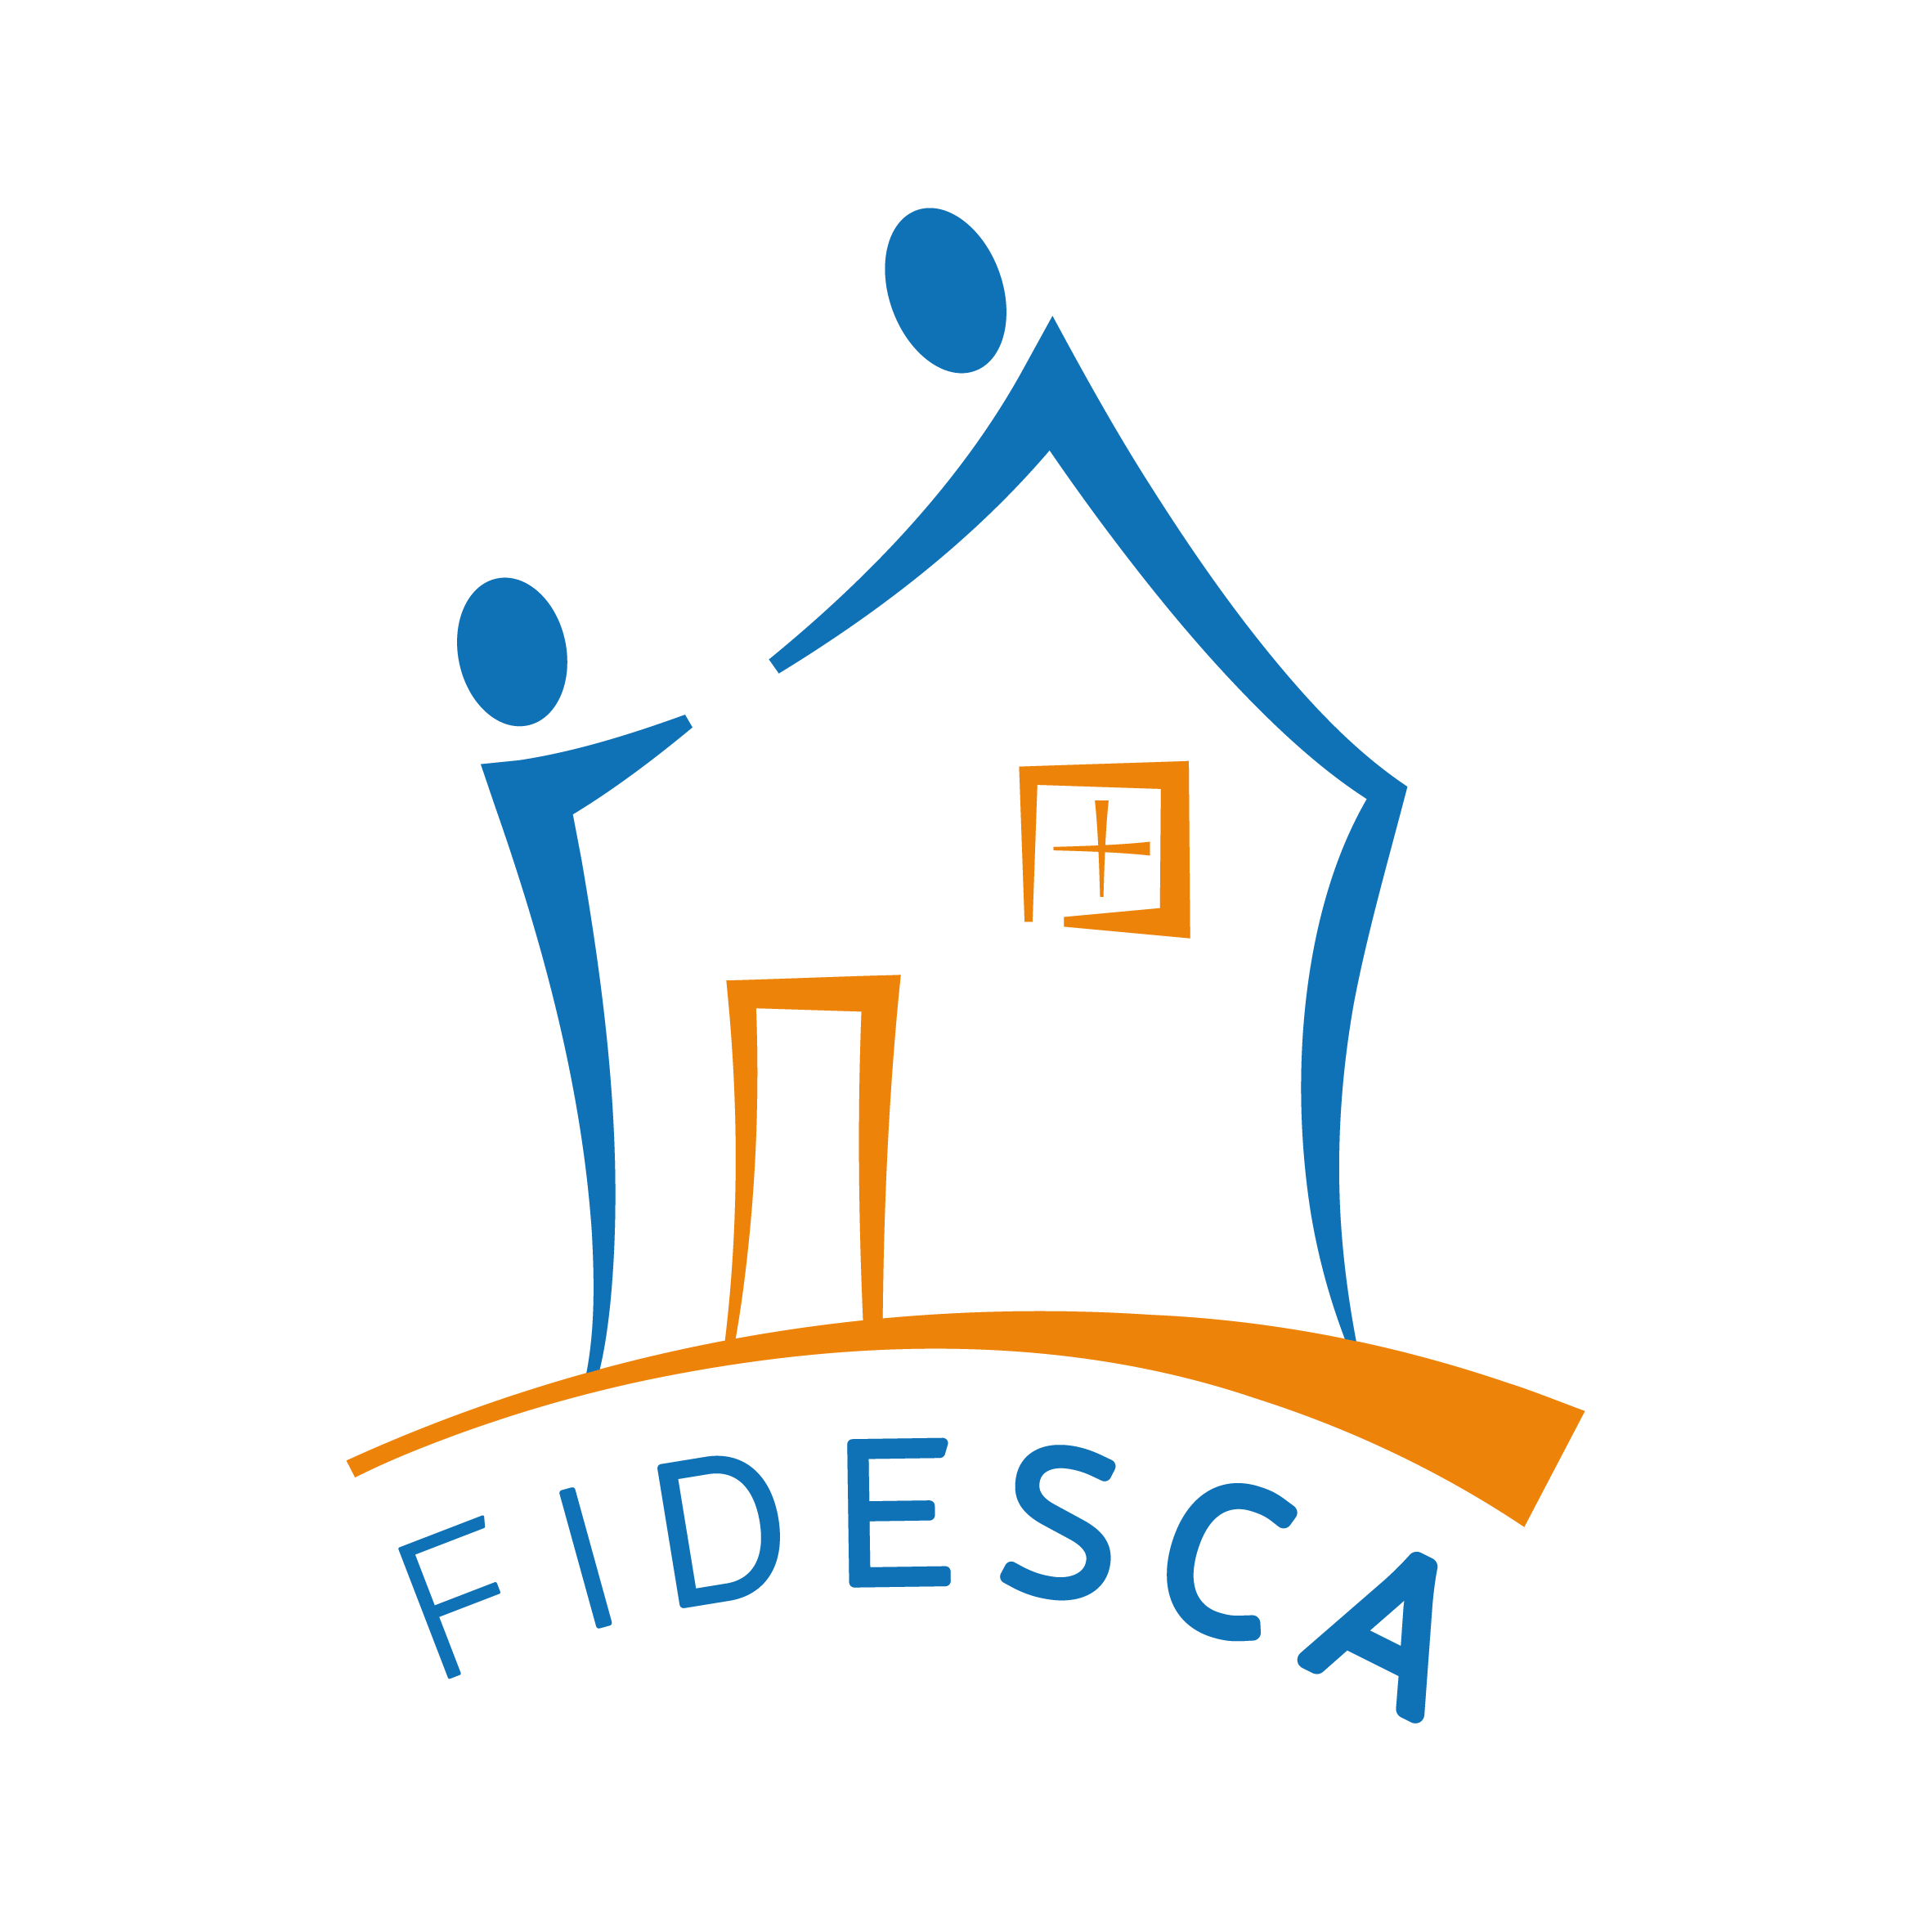 FIDESCA logo